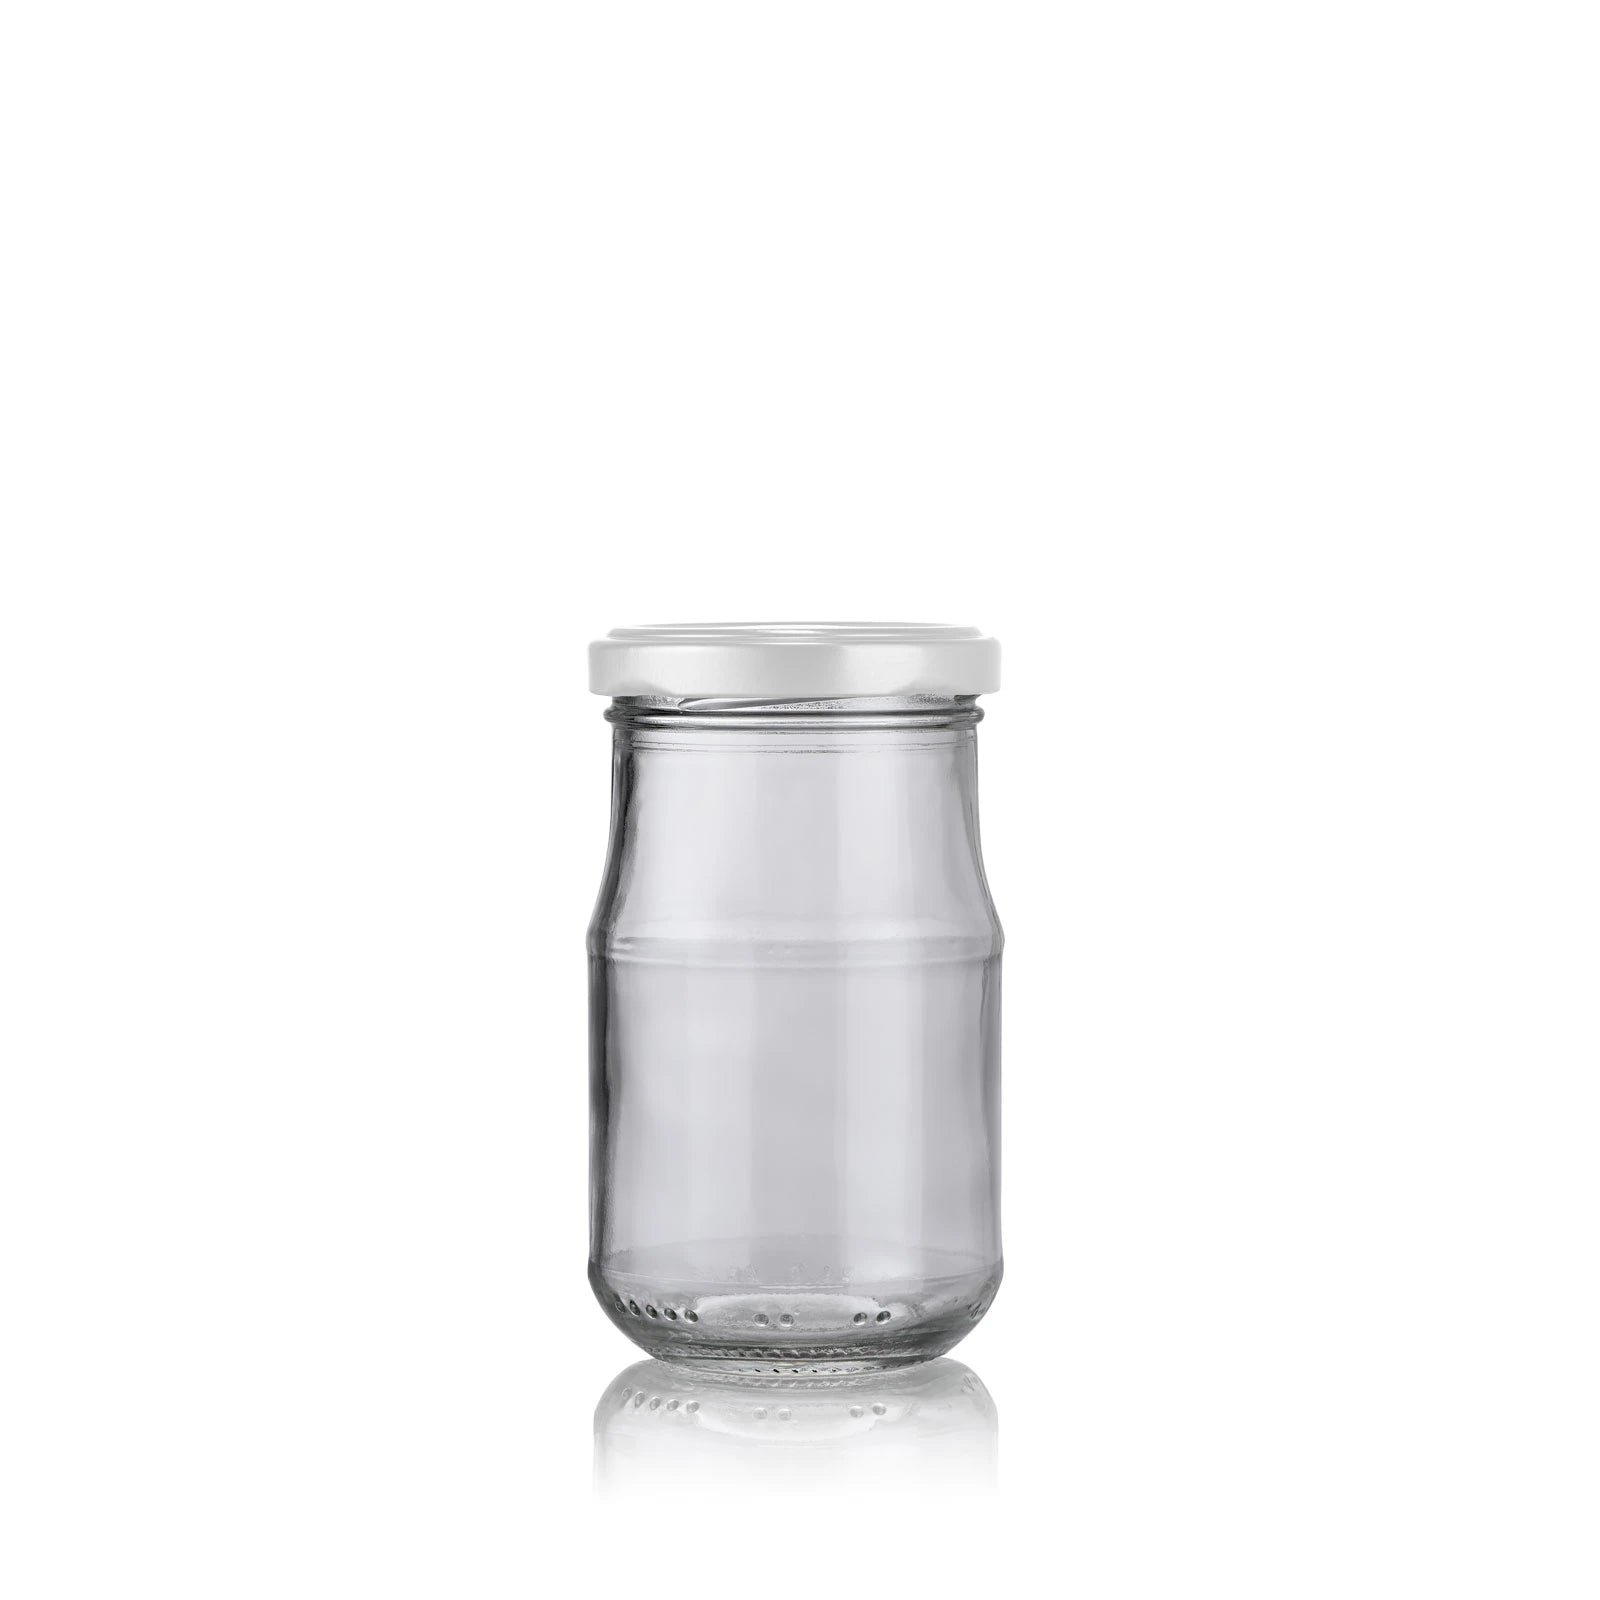 Pot de sauce en verre 212 ml avec couvercle blanc